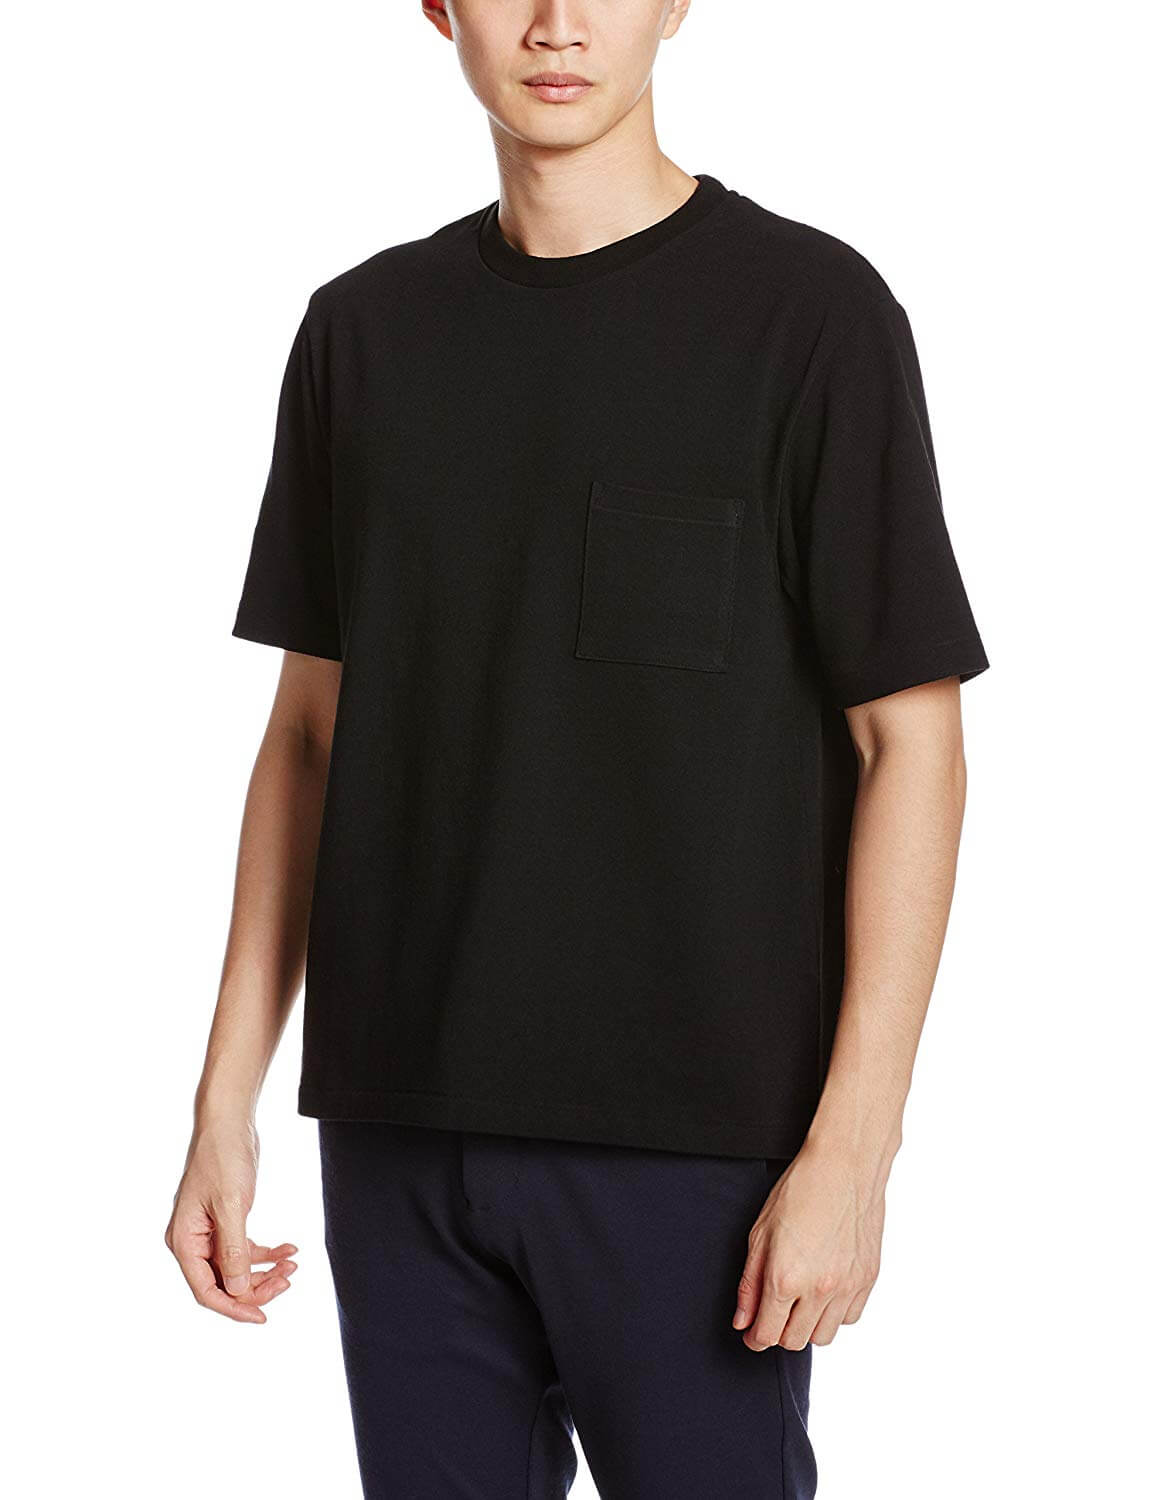 黒Tシャツ コーデ メンズ特集！【2020最新】 | メンズファッションメディア OTOKOMAE - ページ 3